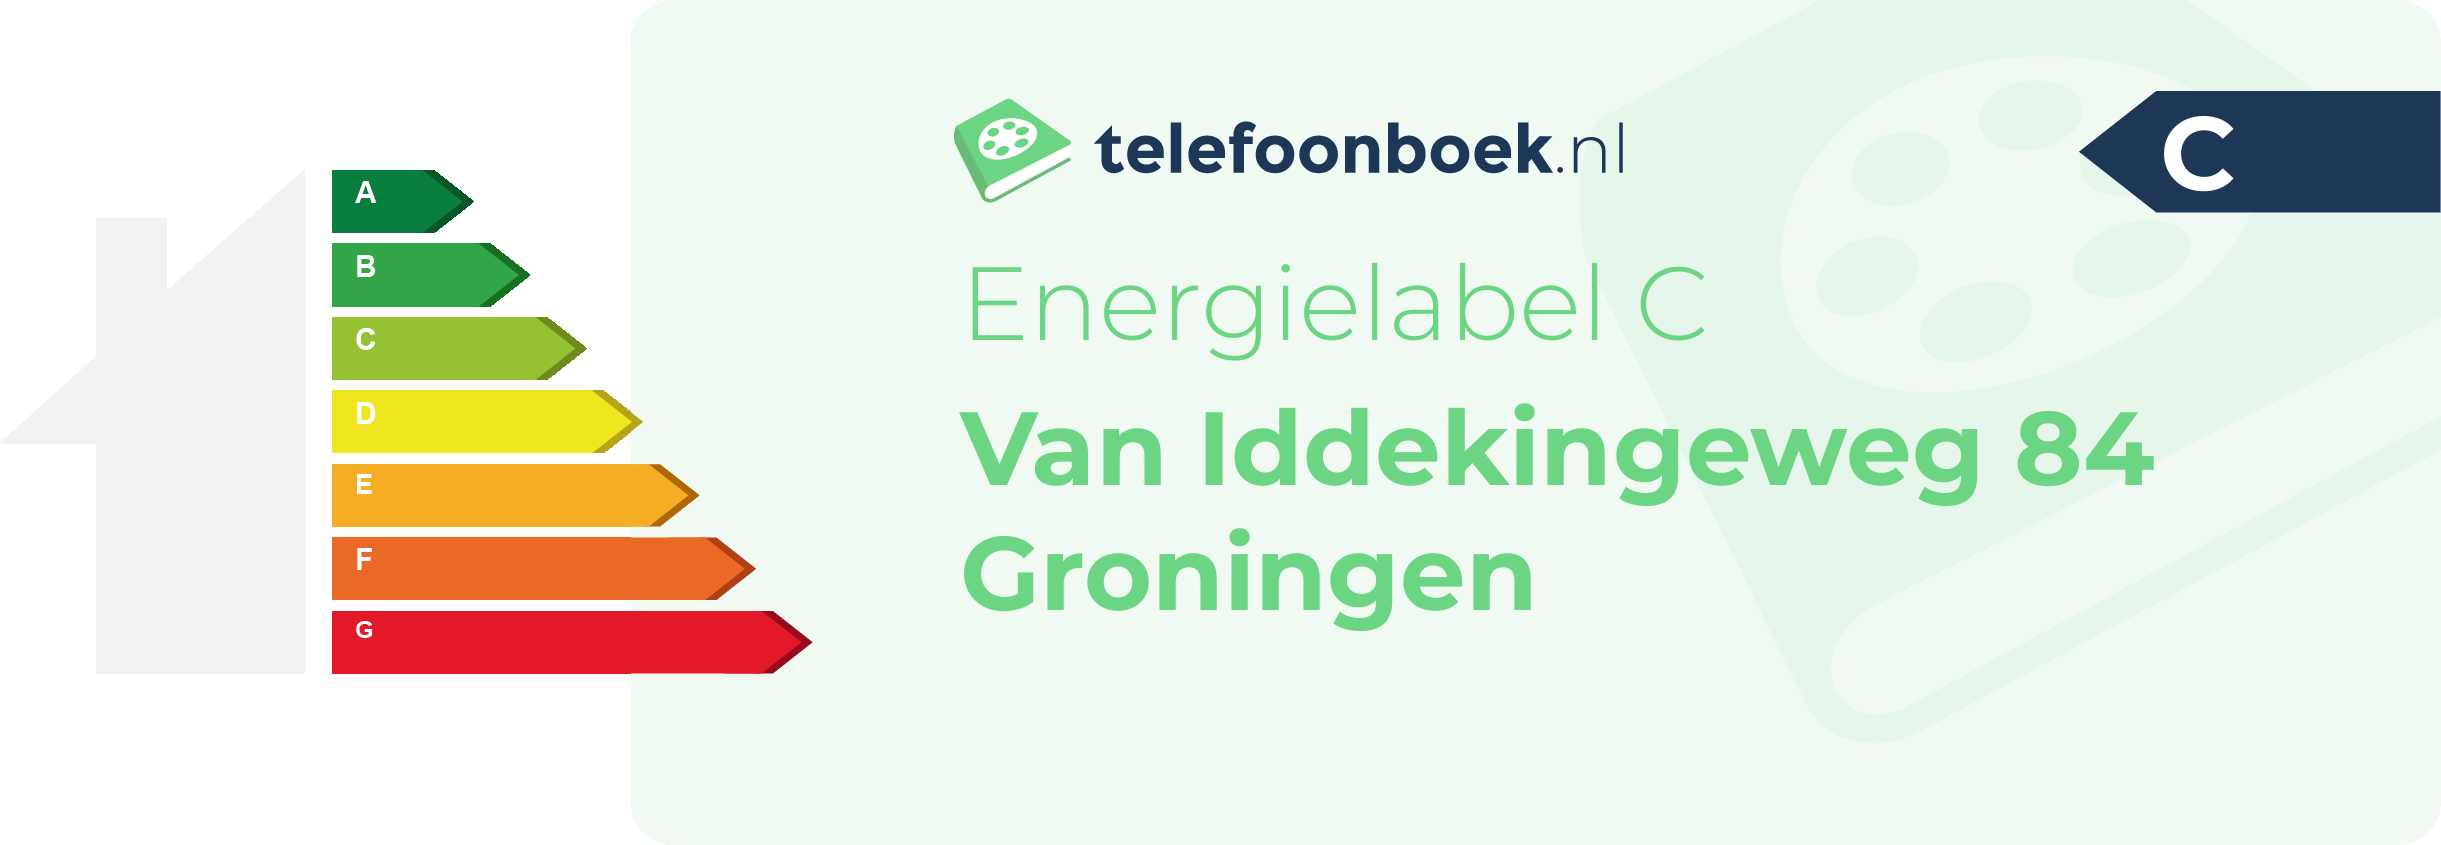 Energielabel Van Iddekingeweg 84 Groningen